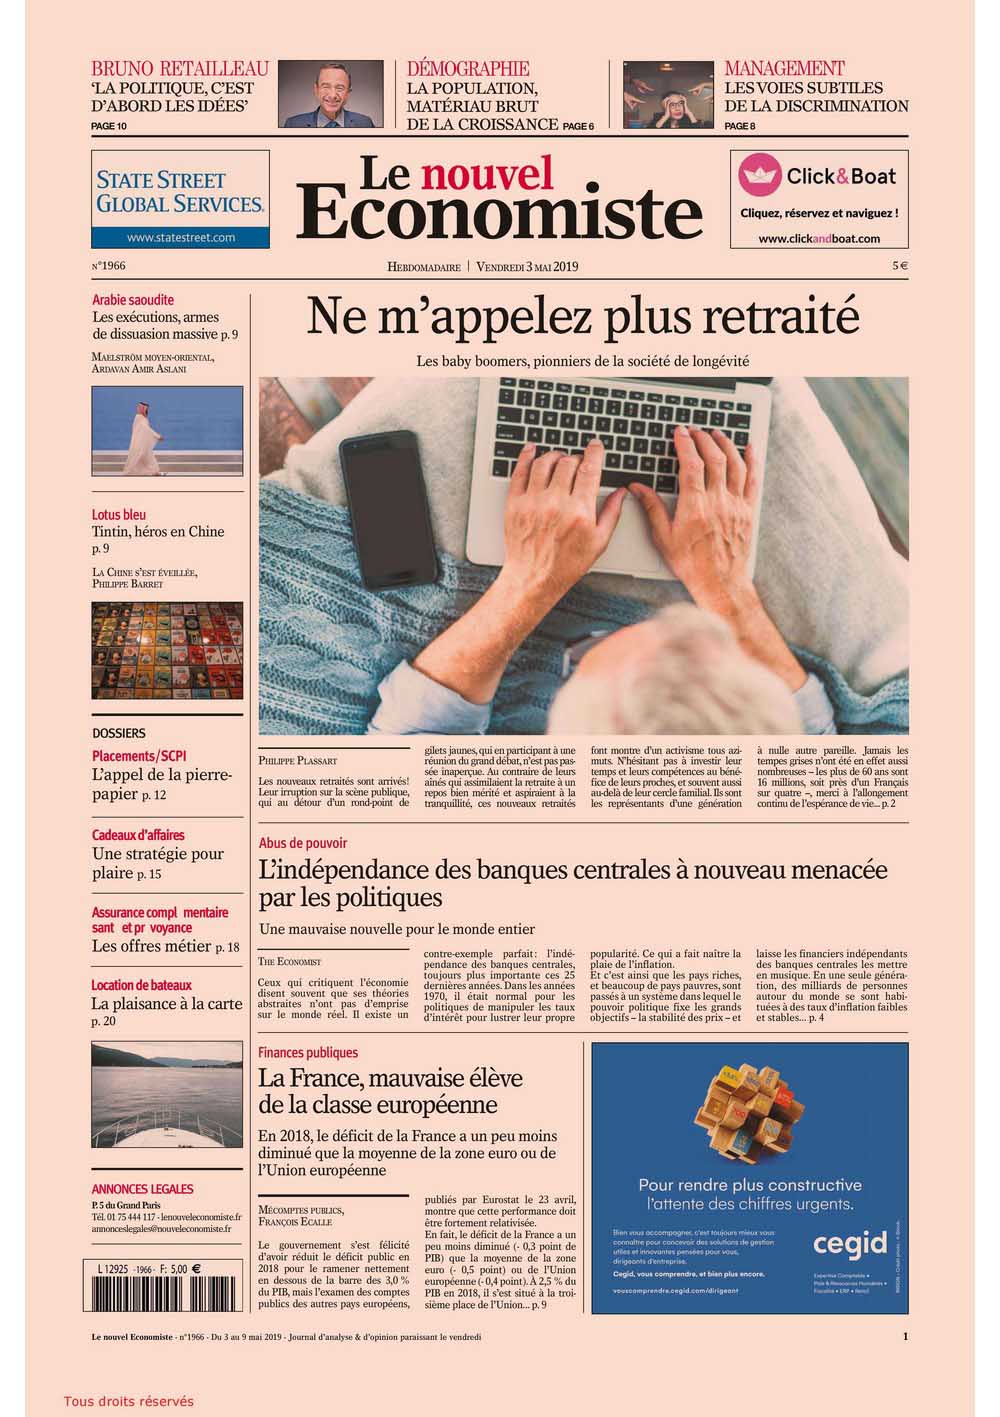 Le Nouvel Economiste - May 2019